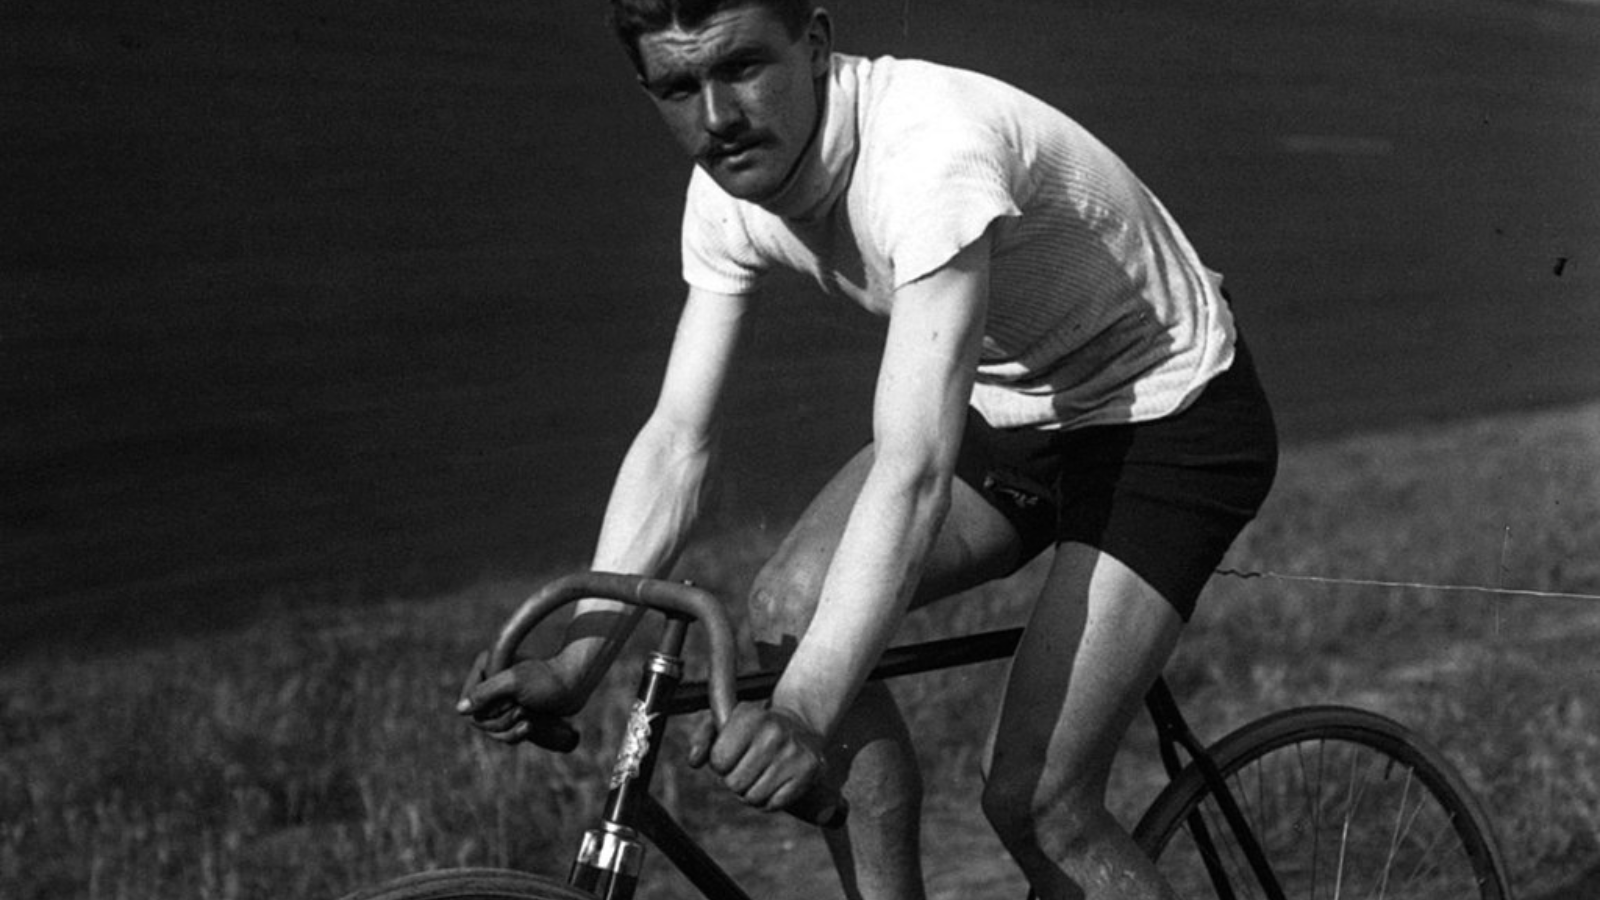 André Trousselier, brother of Tour de France and Paris-w Roubaix winner Louis Trousselier.